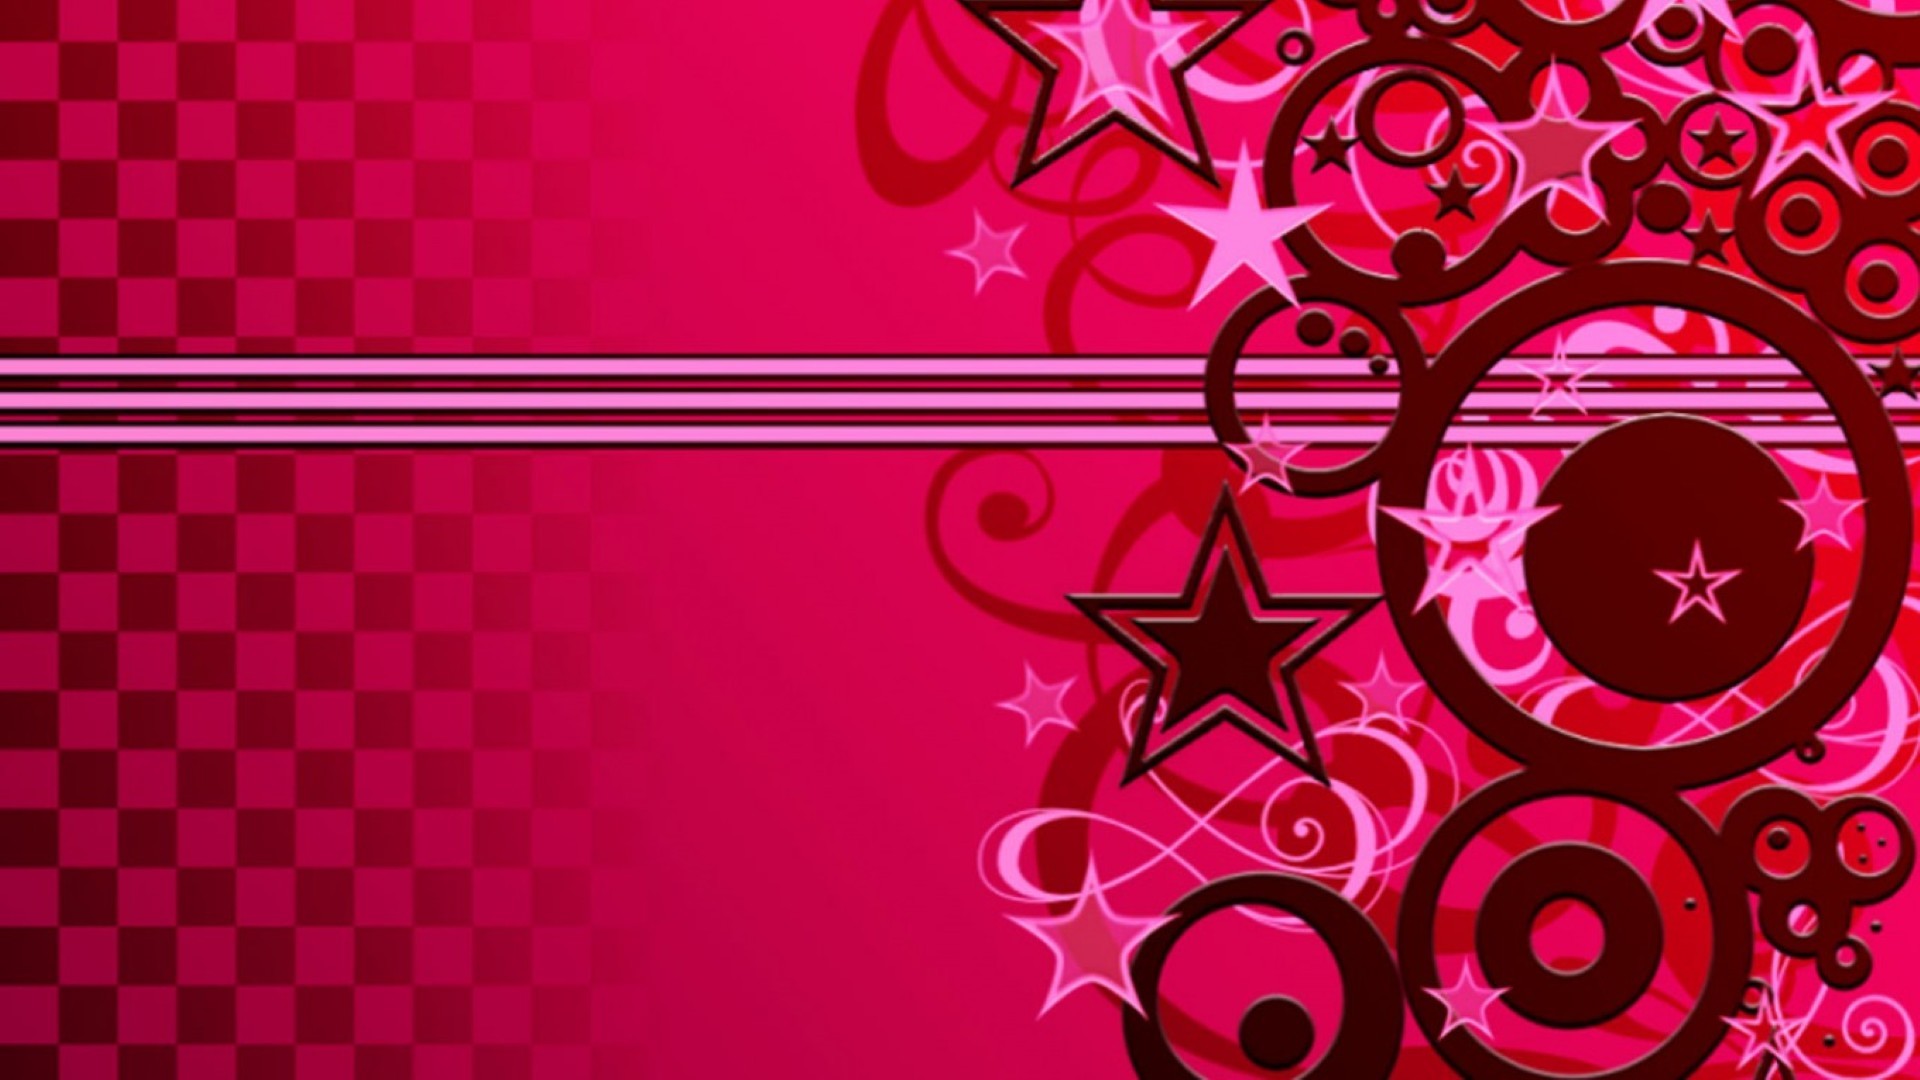 tapete tumblr feminino,rosa,rot,muster,grafikdesign,design